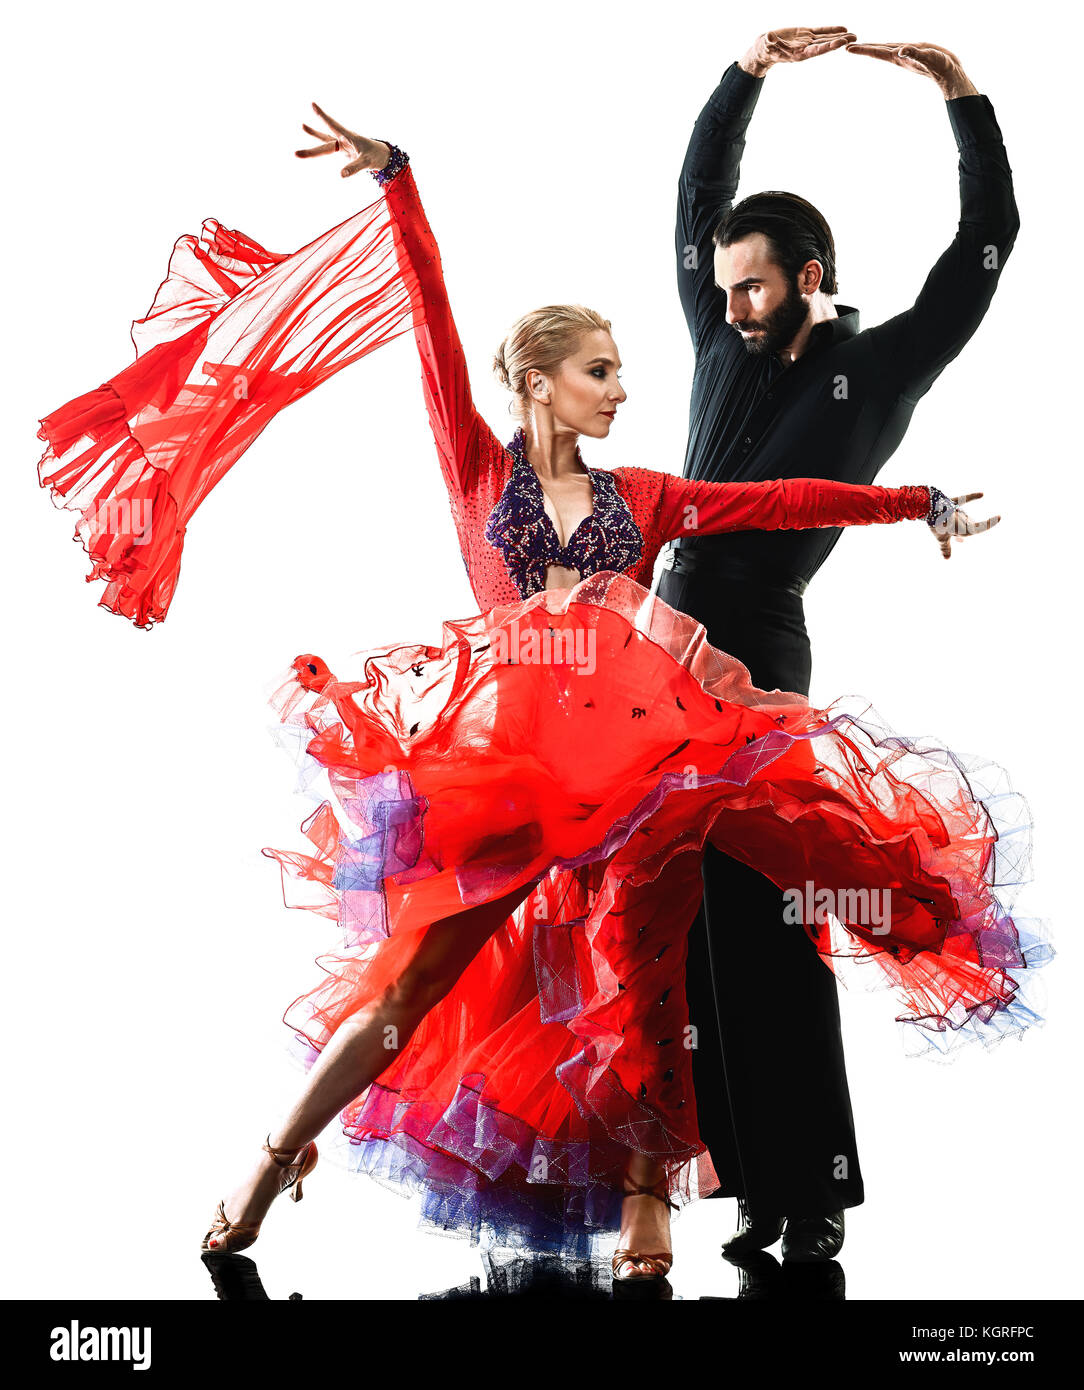 Un uomo caucasico e donna giovane sala da ballo tango ballerini di salsa dancing in studio silhouette isolati su sfondo bianco Foto Stock